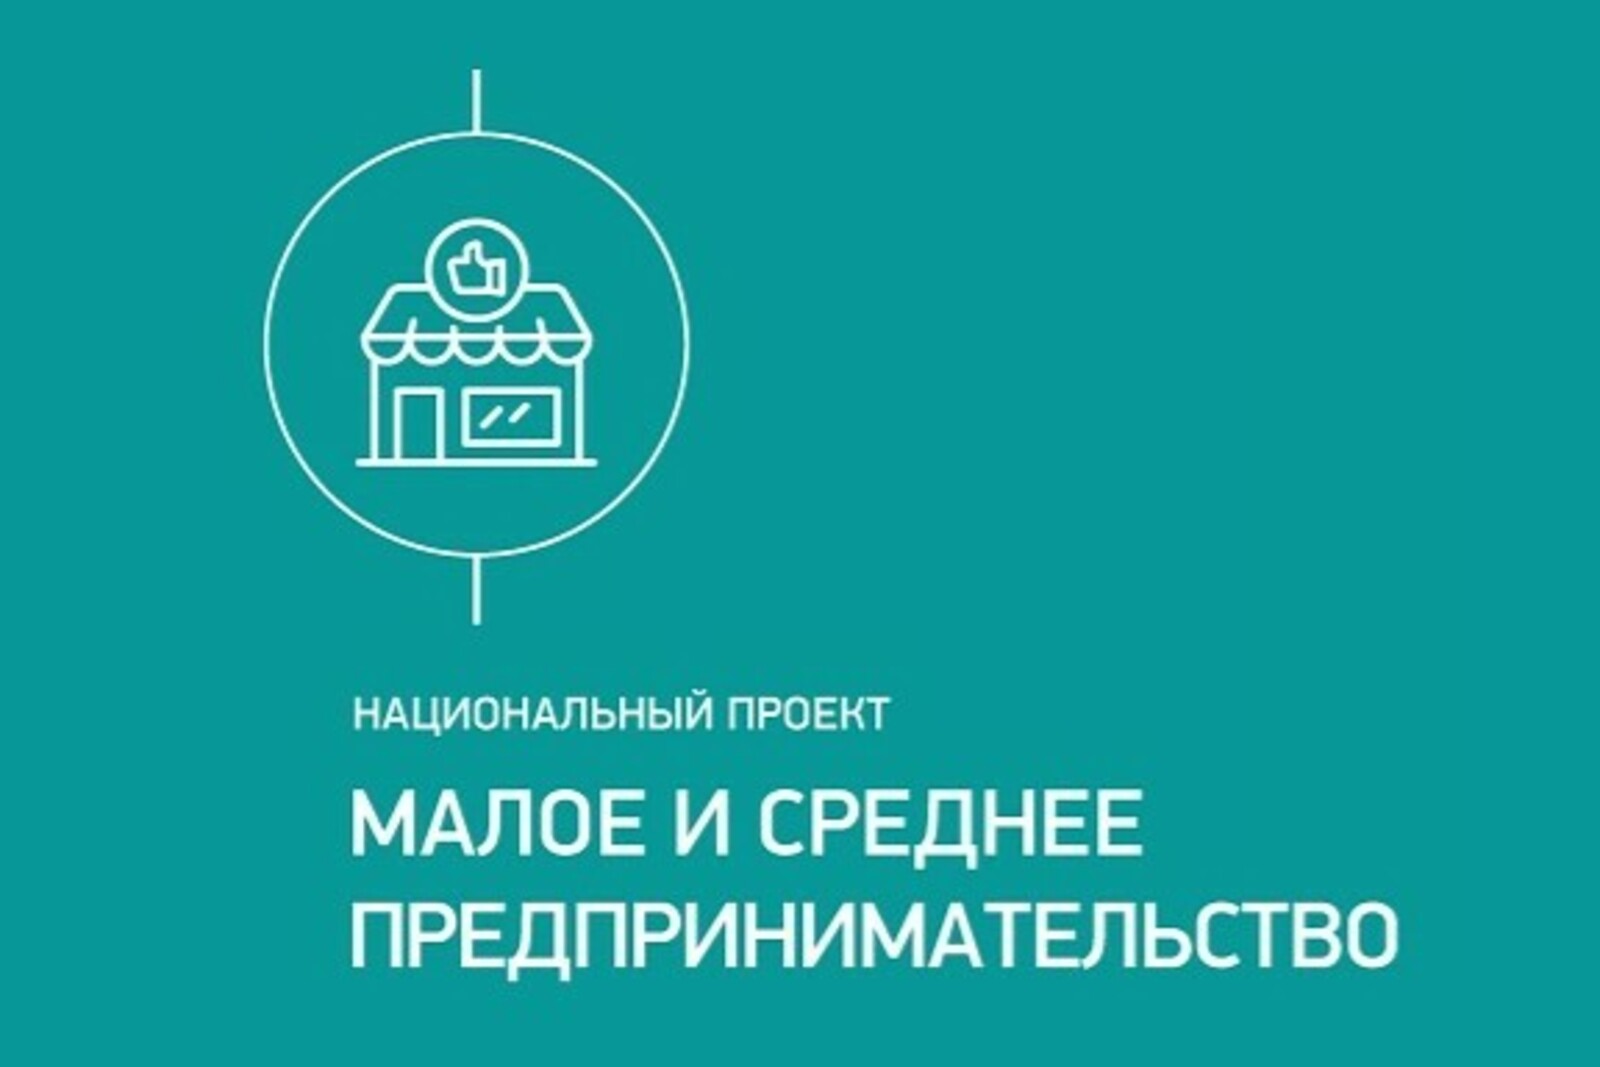 Благодаря нацпроекту по предпринимательству в Башкортостане предприятие расширит спектр услуг и увеличит объемы продаж